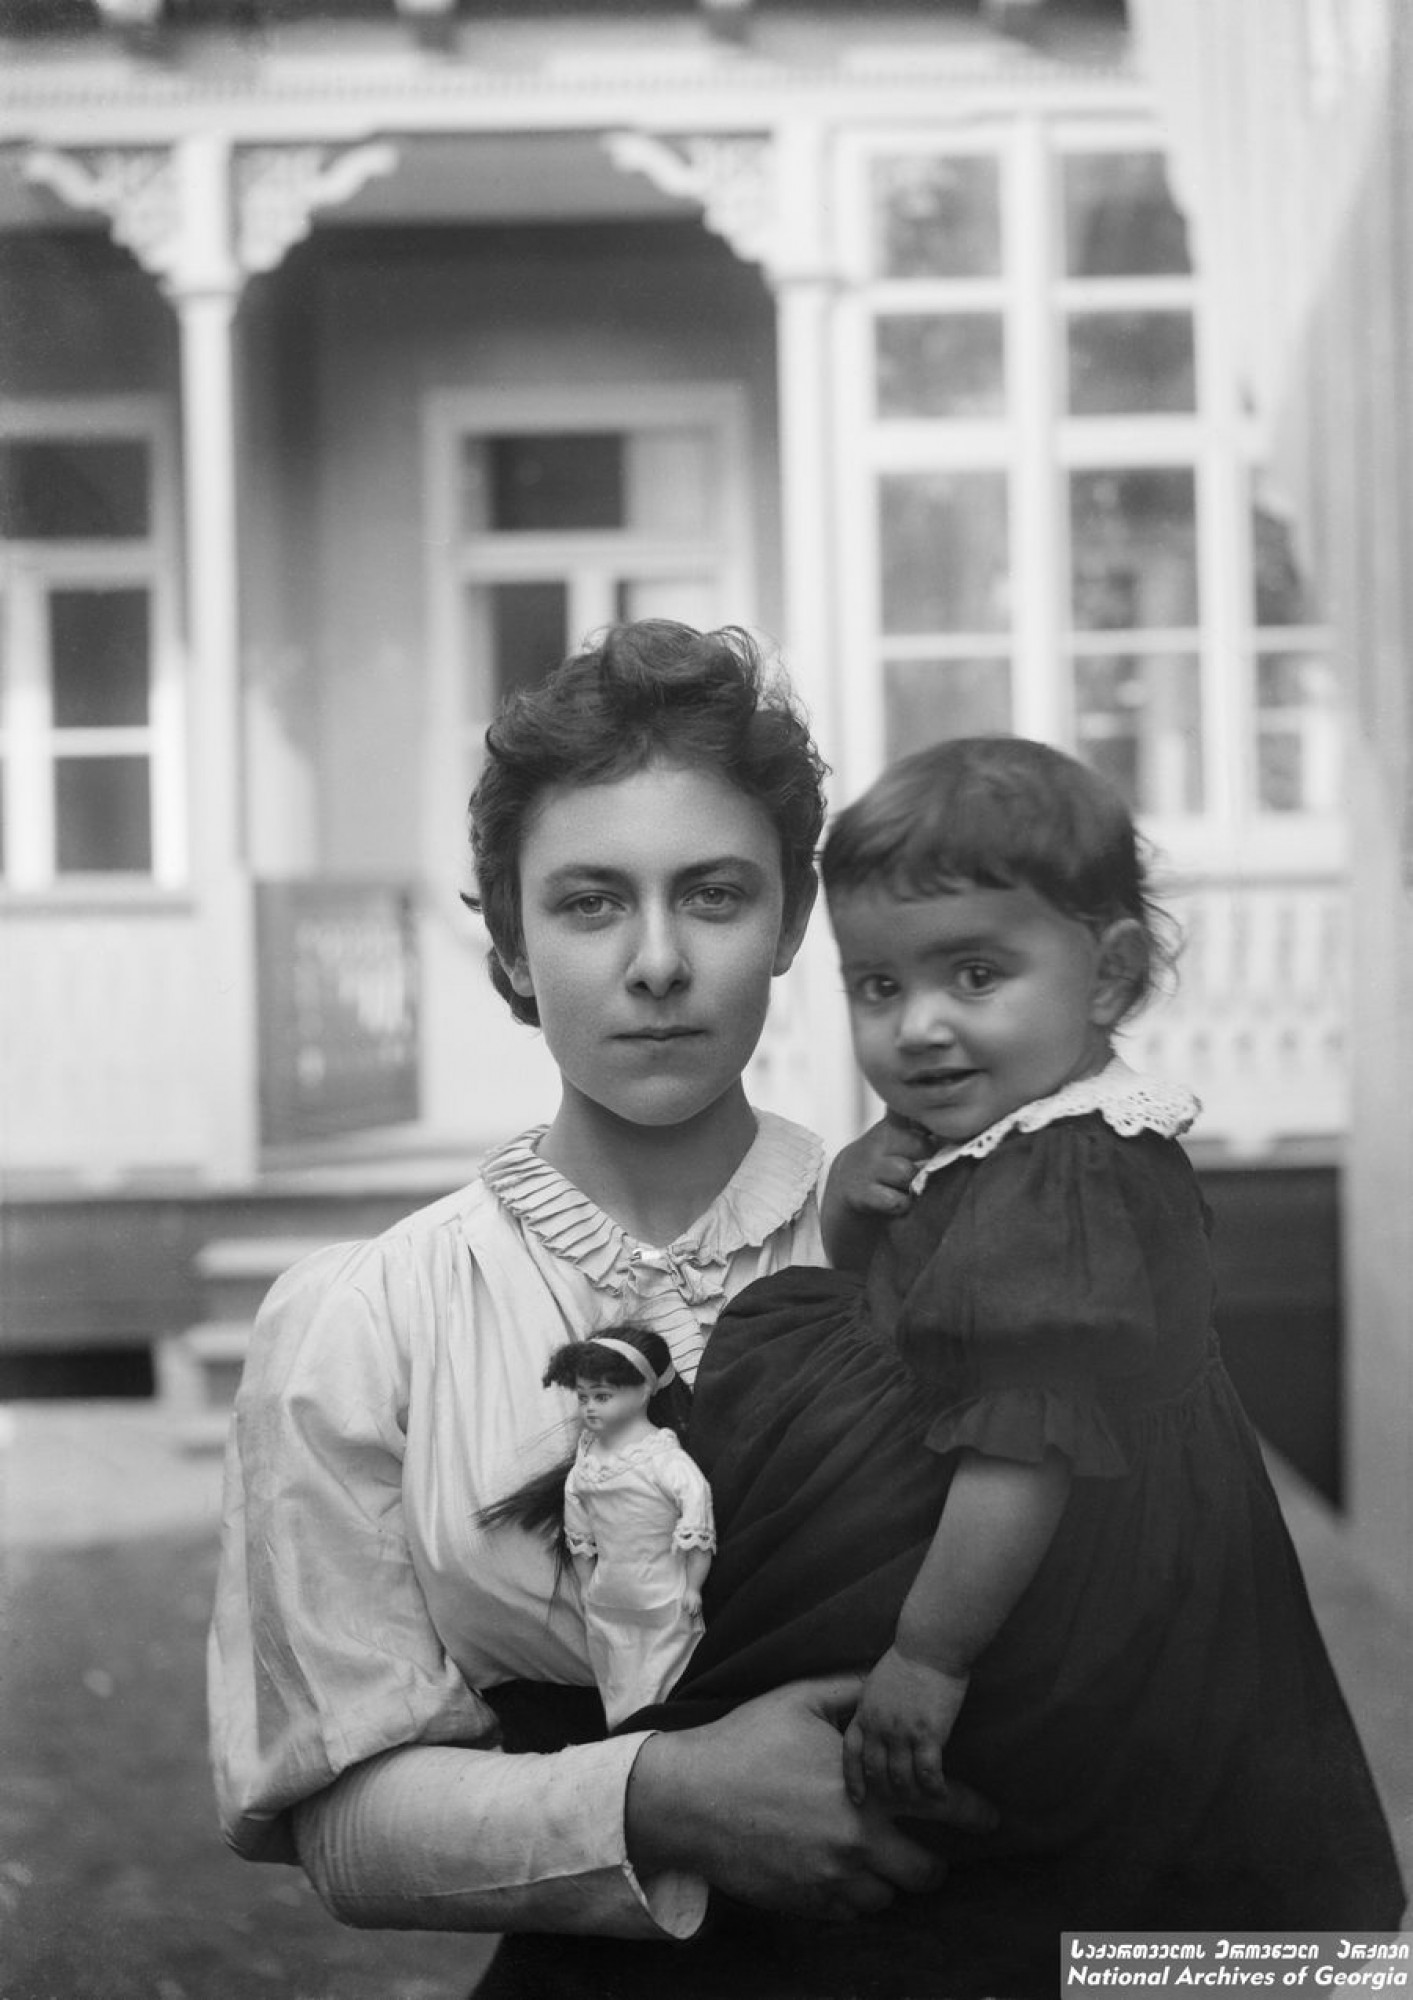 ნინო ზურაბიშვილი, ნიკო ნიკოლაძის უფროსი ქალიშვილი და თამარ ნიკოლაძე / ფოტო: ნიკო ნიკოლაძე. <br>
1893. <br>
Nino Zurabishvili, Niko Nikoladze’s eldest daughter and Tamar Nikoladze. <br>
Photo: Niko Nikoladze. <br>
1870-იან წლებში ანა მაკაროვასგან ნიკო ნიკოლაძეს ქალიშვილი, ნინო შეეძინა. წყვილი ქორწინებაში არ იმყოფებოდა. თავიდანვე დაობლებული ნინო მაკაროვა მამის ხარჯით რუსეთში, პანსიონში იზრდებოდა. მოგვიანებით, როდესაც გადასახლებული ნიკო პეტერბურგში ცხოვრობდა ოლღასთან ერთად, ოლღა გურამიშვილმა 12 წლის გოგონა მოძებნა და შეიფარა. 

სულ ნიკო ნიკოლაძეს 6 შვილი ჰყავდა. პირველი ნინო იყო, შემდეგ, ბოგუმილა ზემიანსკაიასთან ქორწინებაში, დაიბადნენ  თელიკო და ლოლო, ხოლო ოლღა გურამიშვილთან ნიკოს სამი შვილი, რუსუდანი, თამარი და გიორგი შეეძინა.